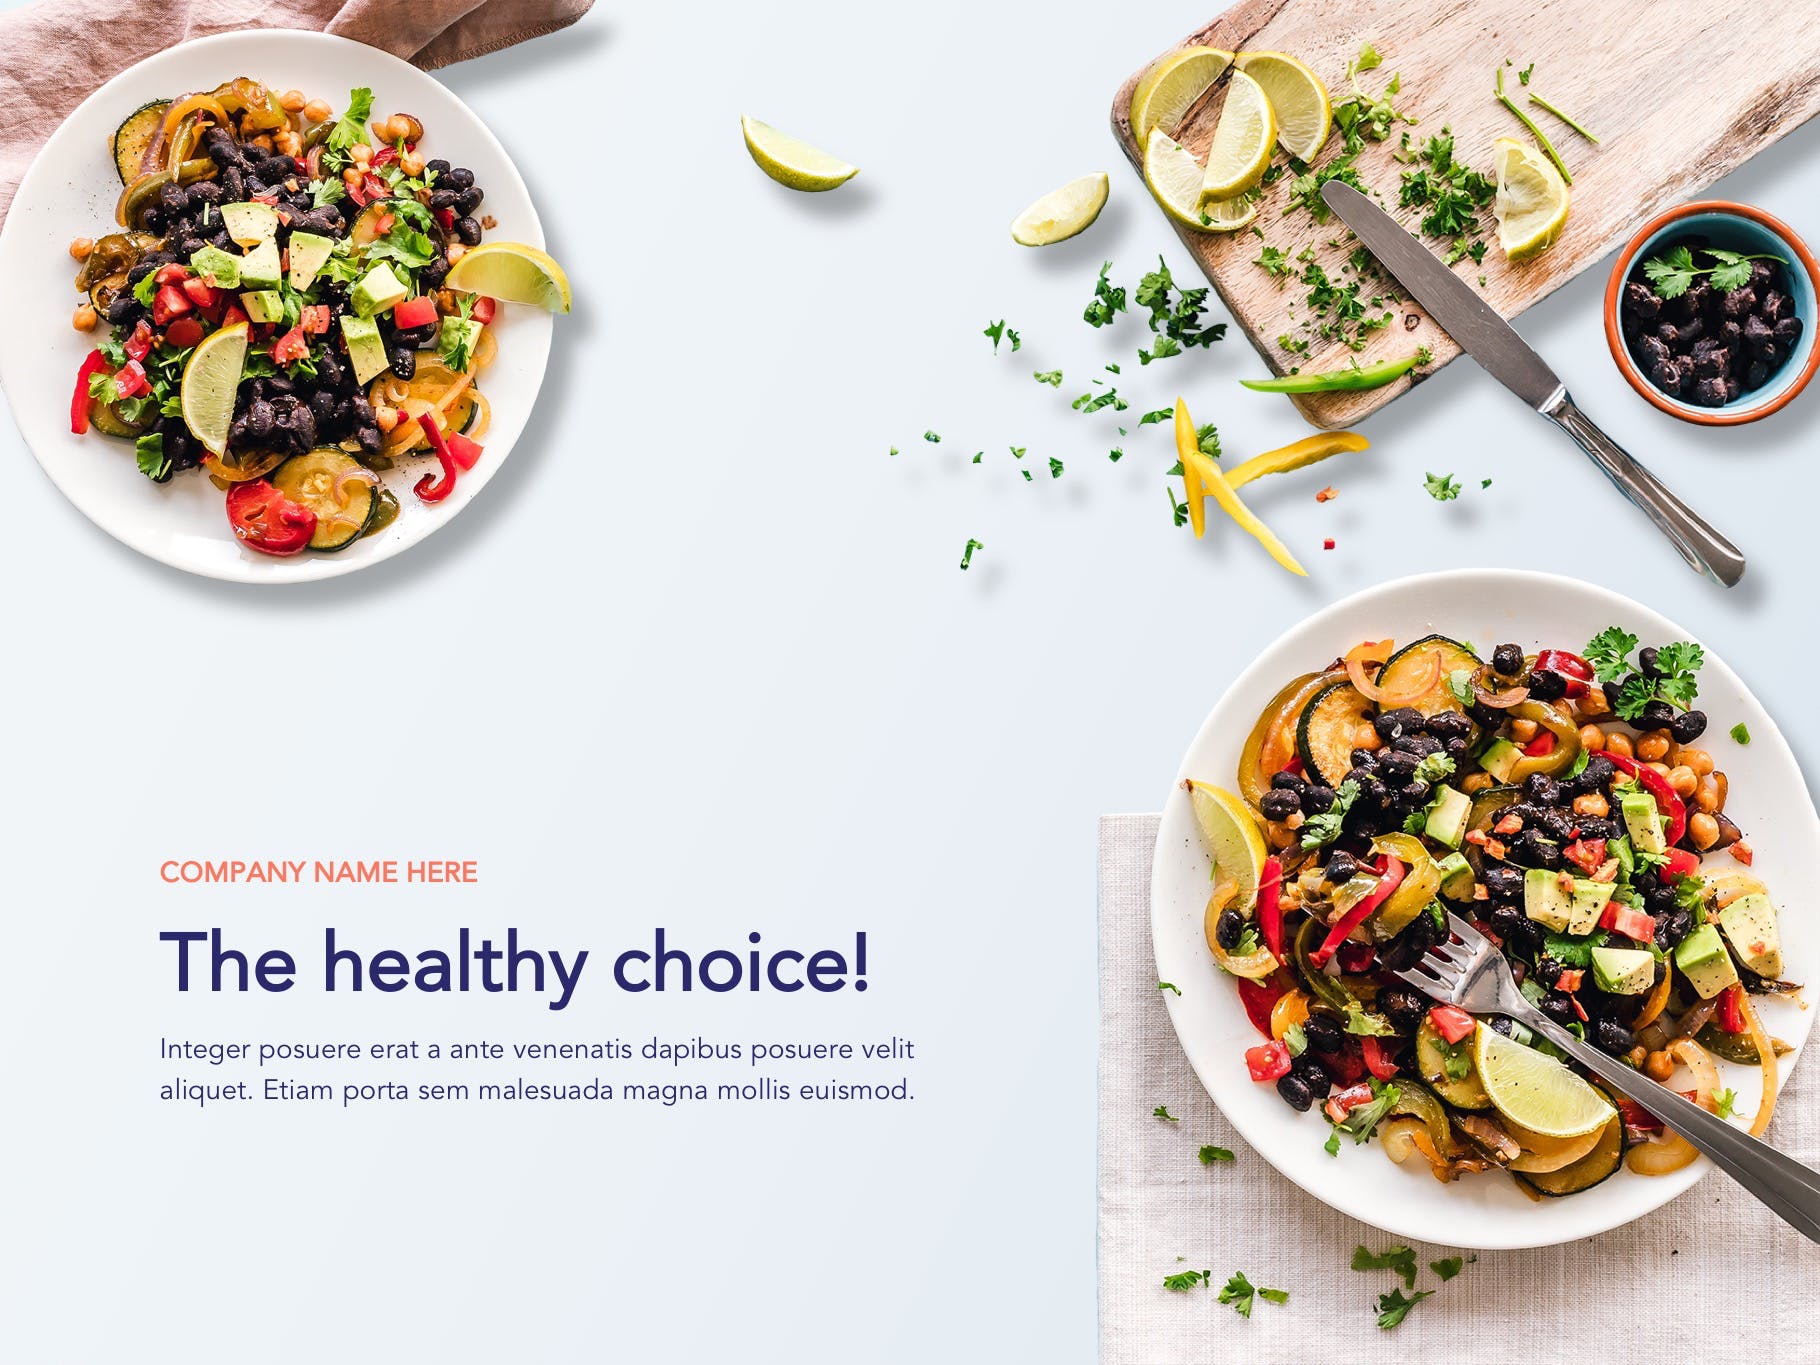 营养配餐食谱谷歌幻灯片设计模板 Nutritious Google Slides Template插图(1)